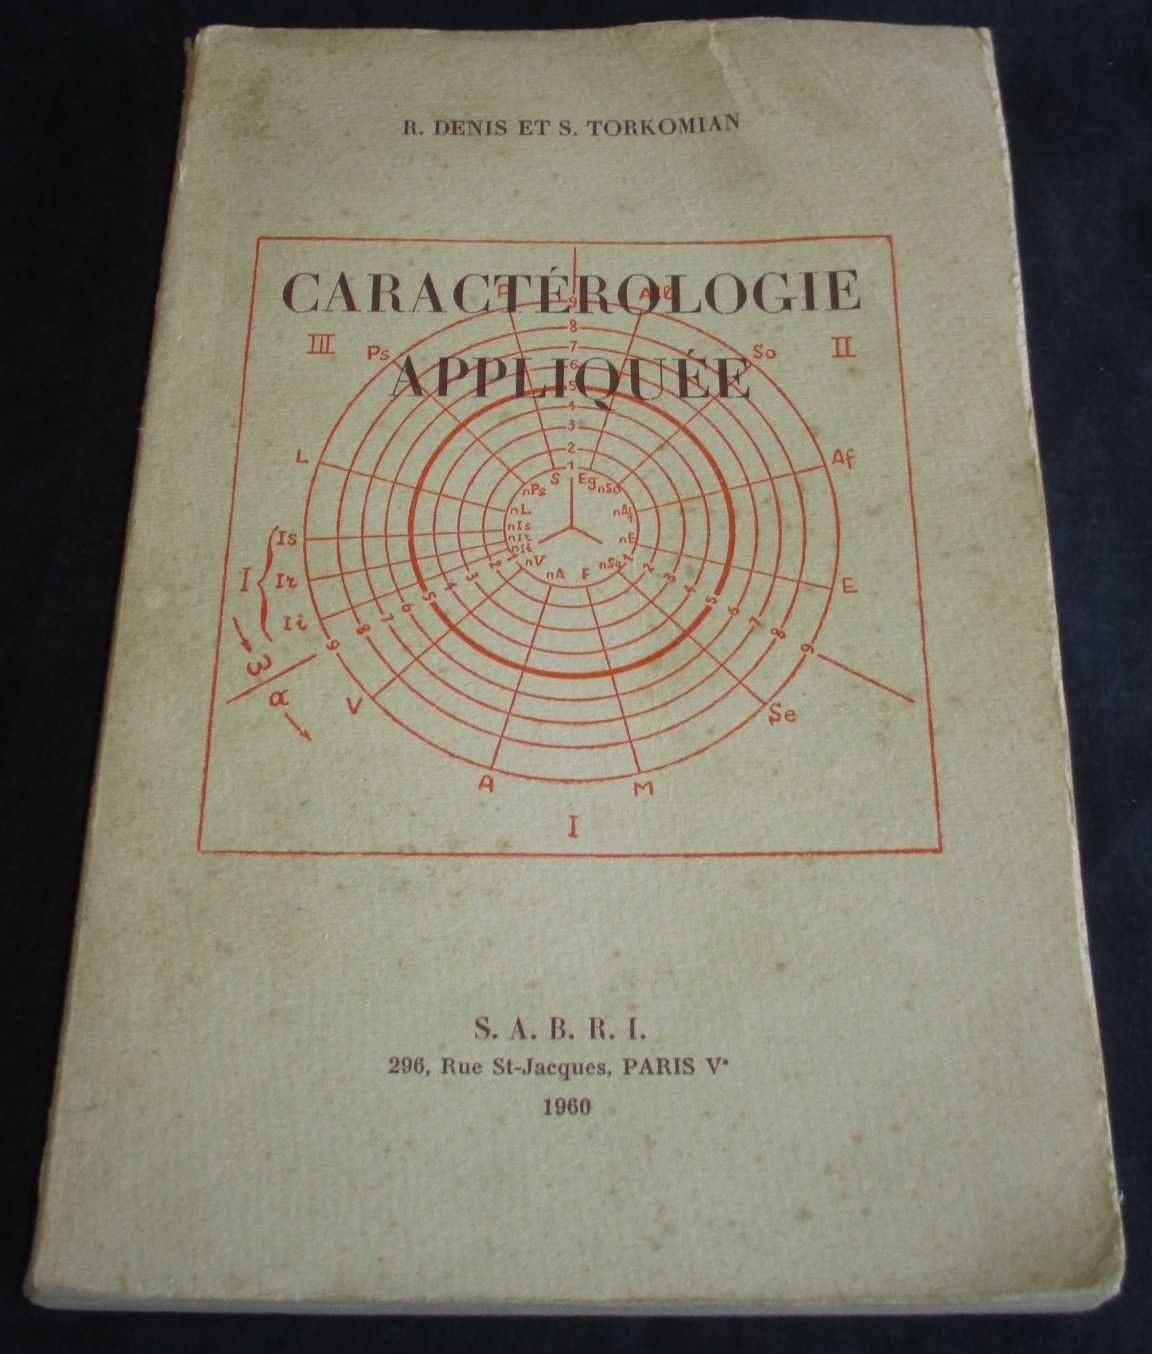 Livro Caractérologie Appliquée R. Denis e S. Torkomian